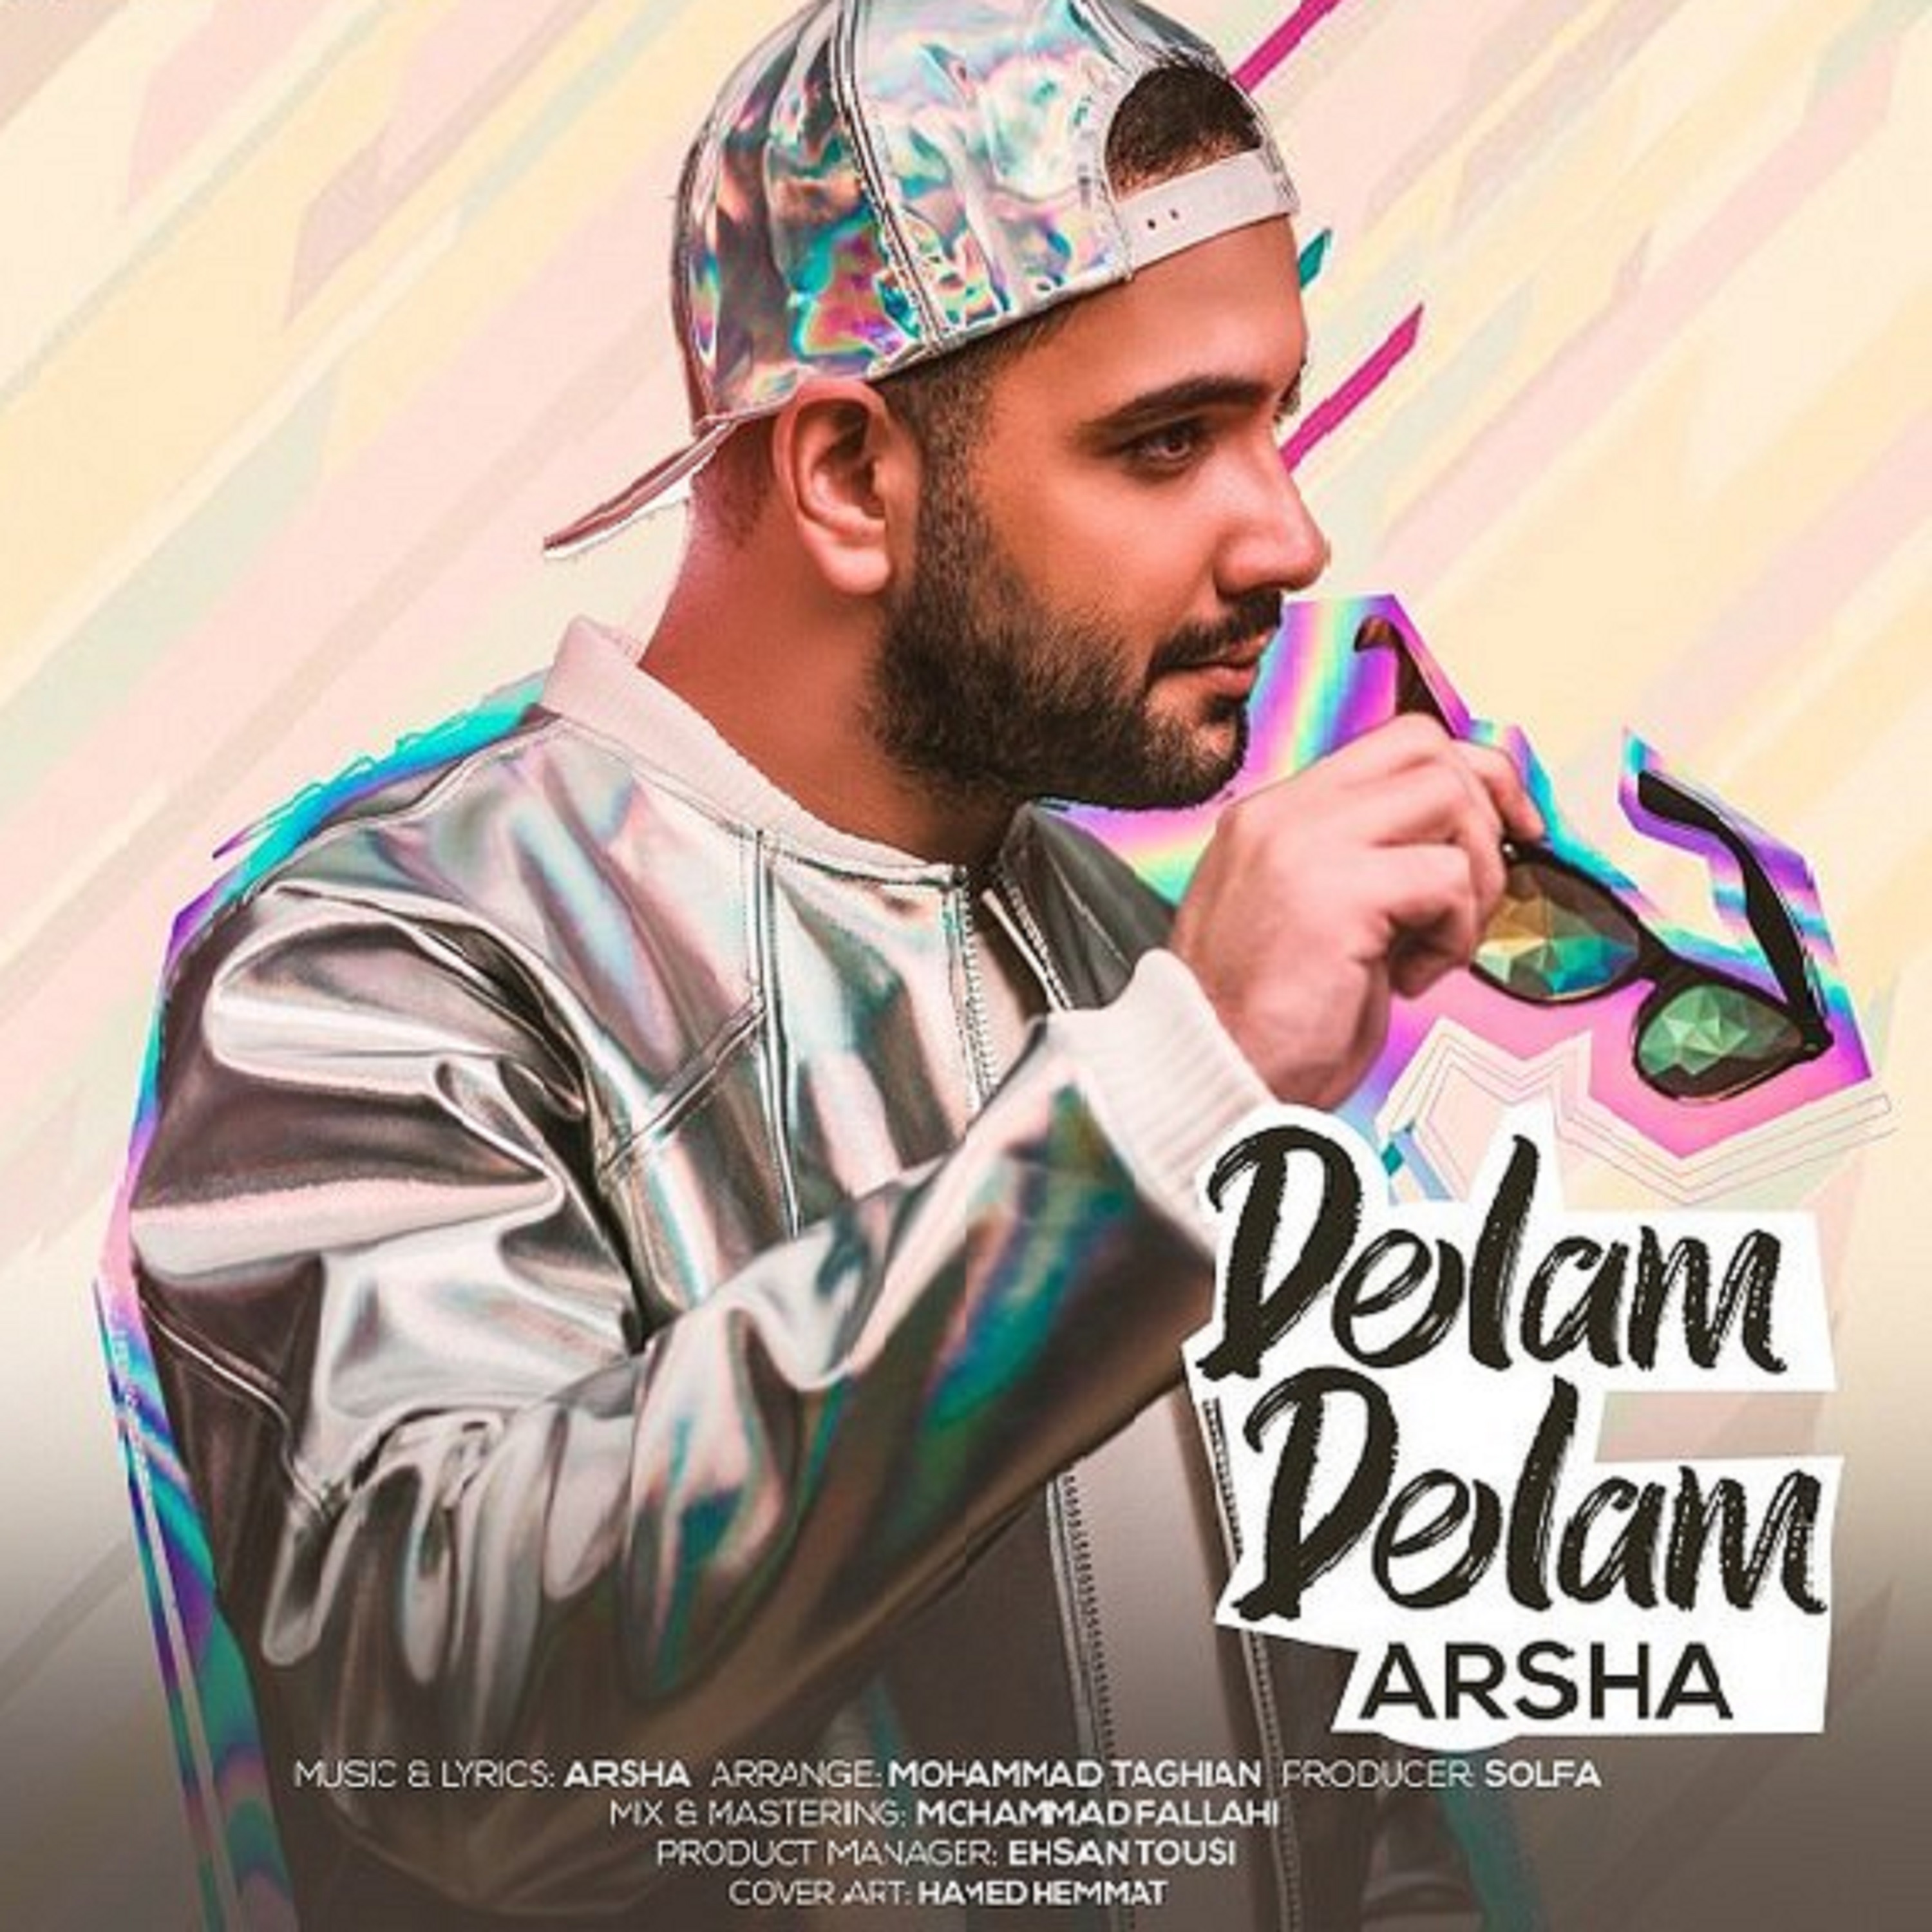  دانلود آهنگ جدید آرشا - دلم دلم | Download New Music By Arsha - Delam Delam